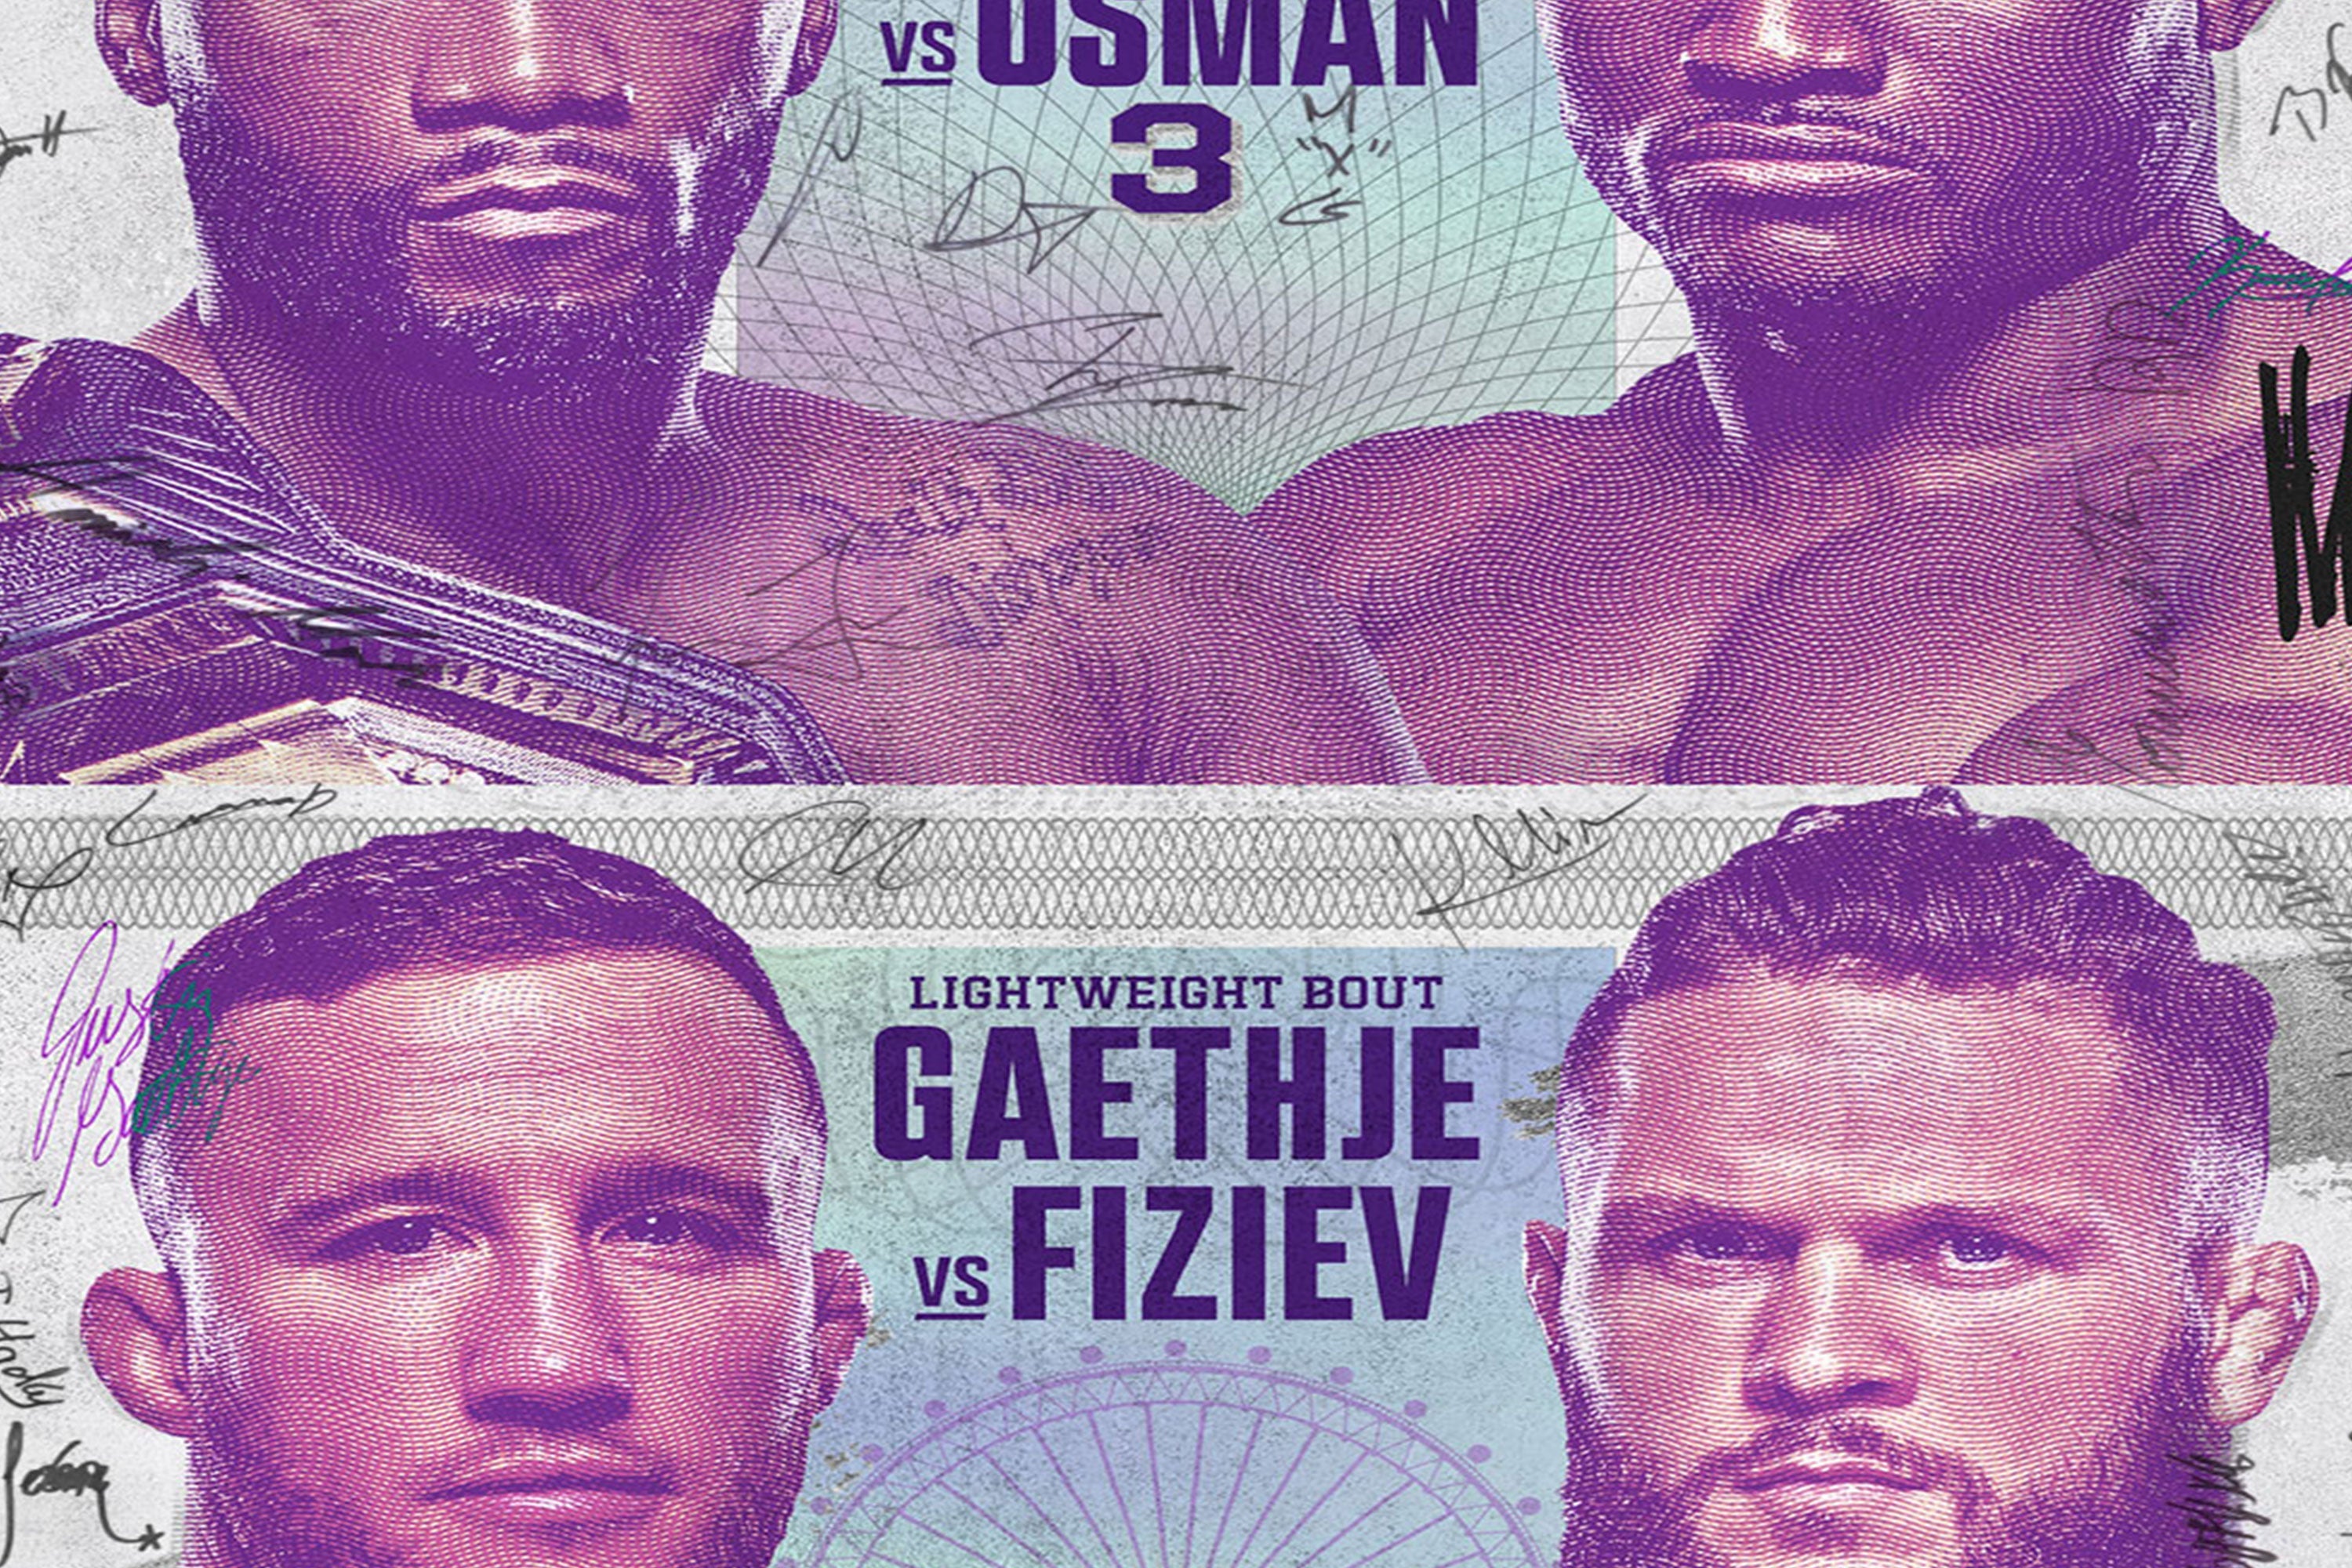 UFC 286: Edwards vs Usman 3 Autographed Event Poster - Last Chance